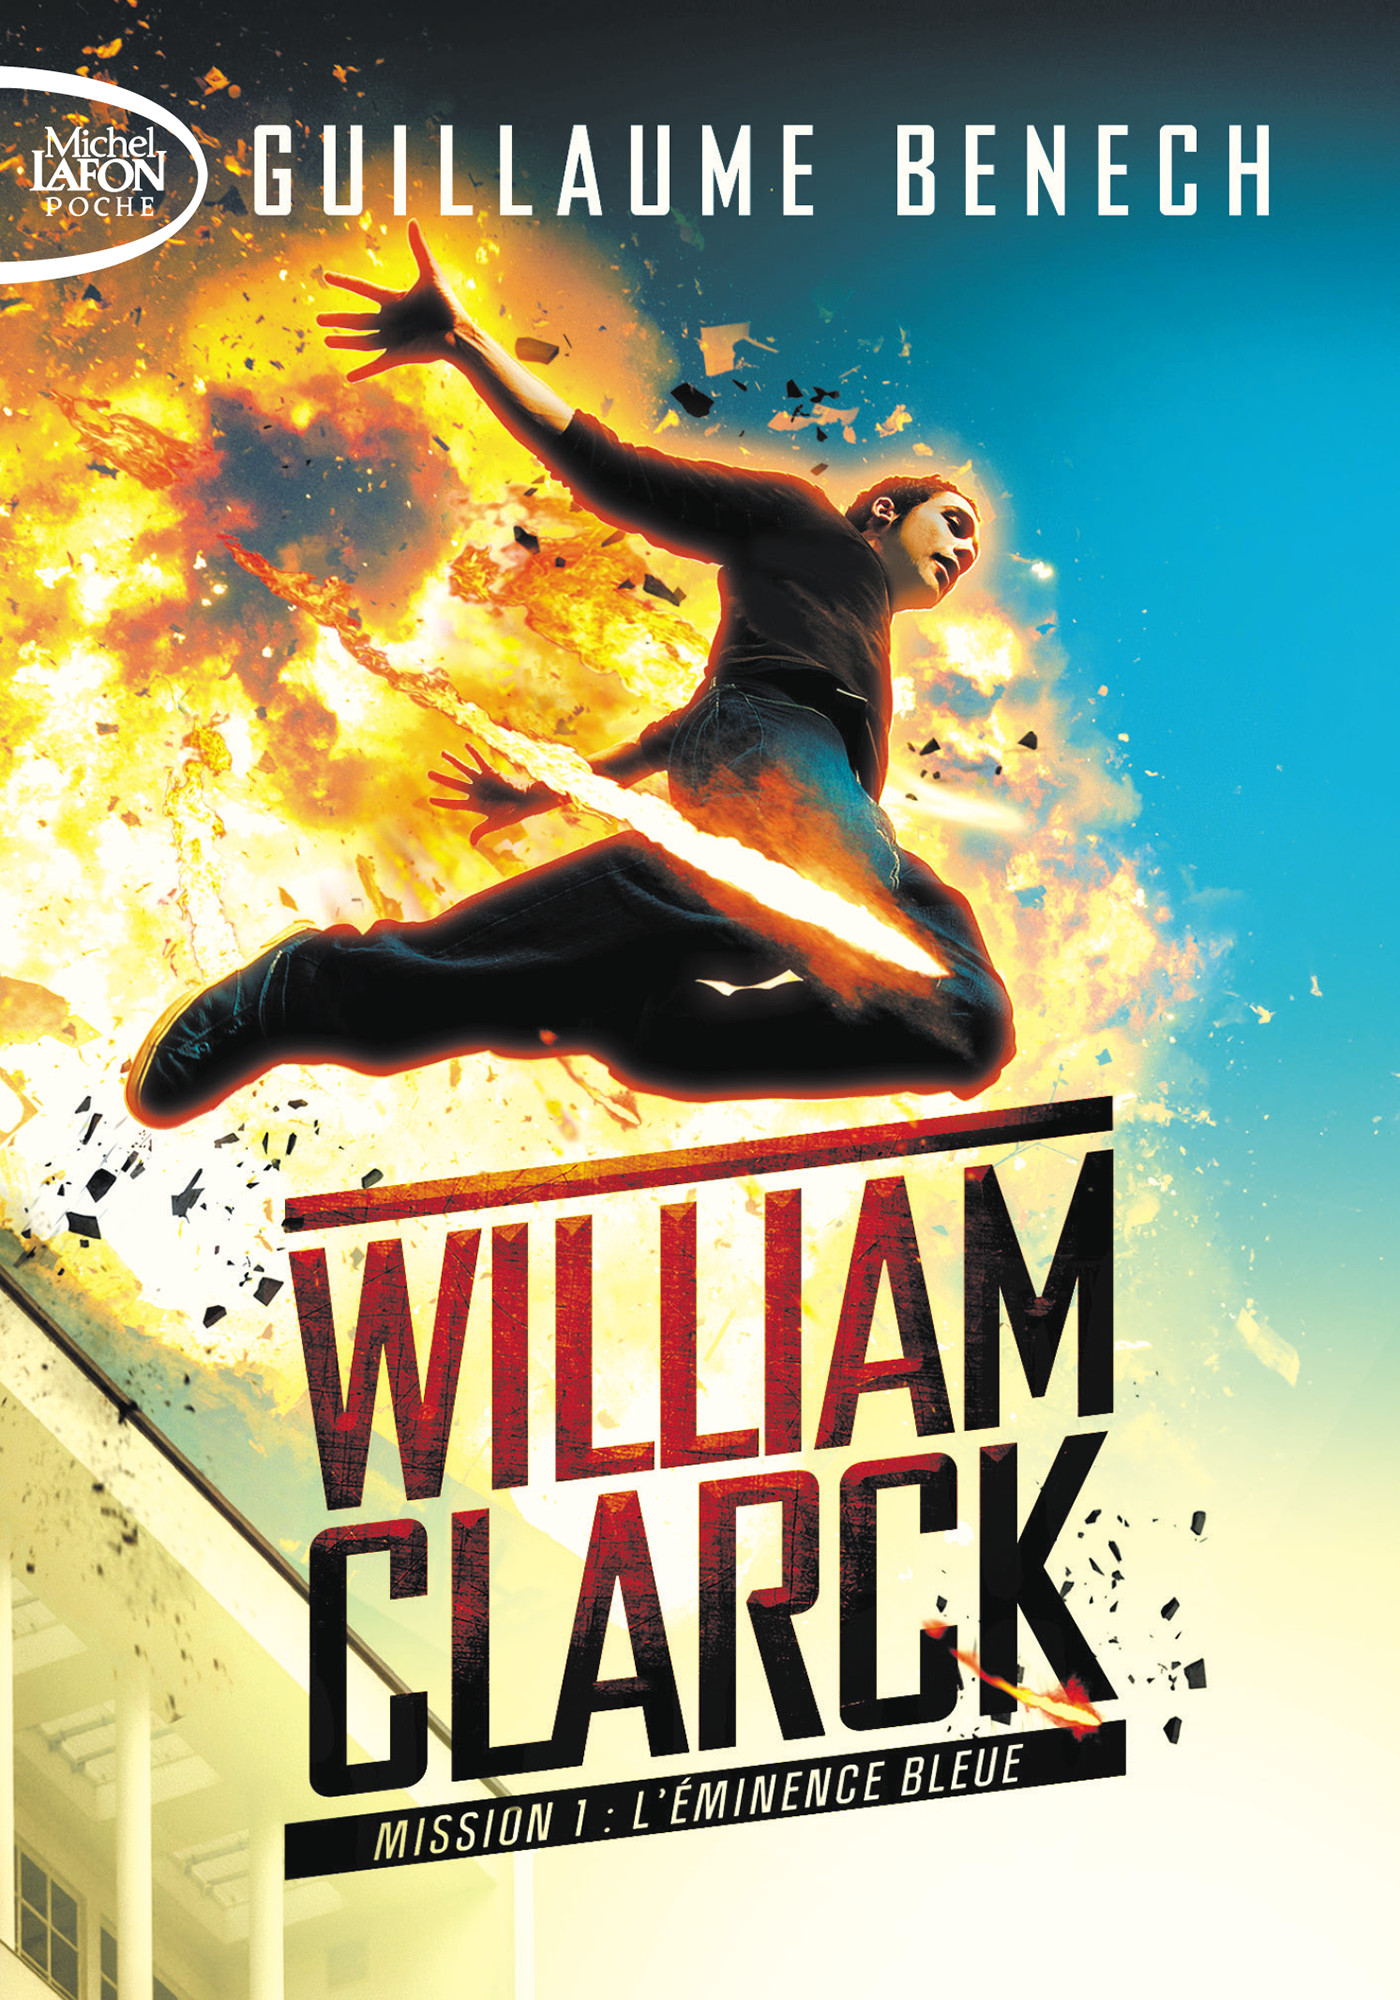 William Clarck